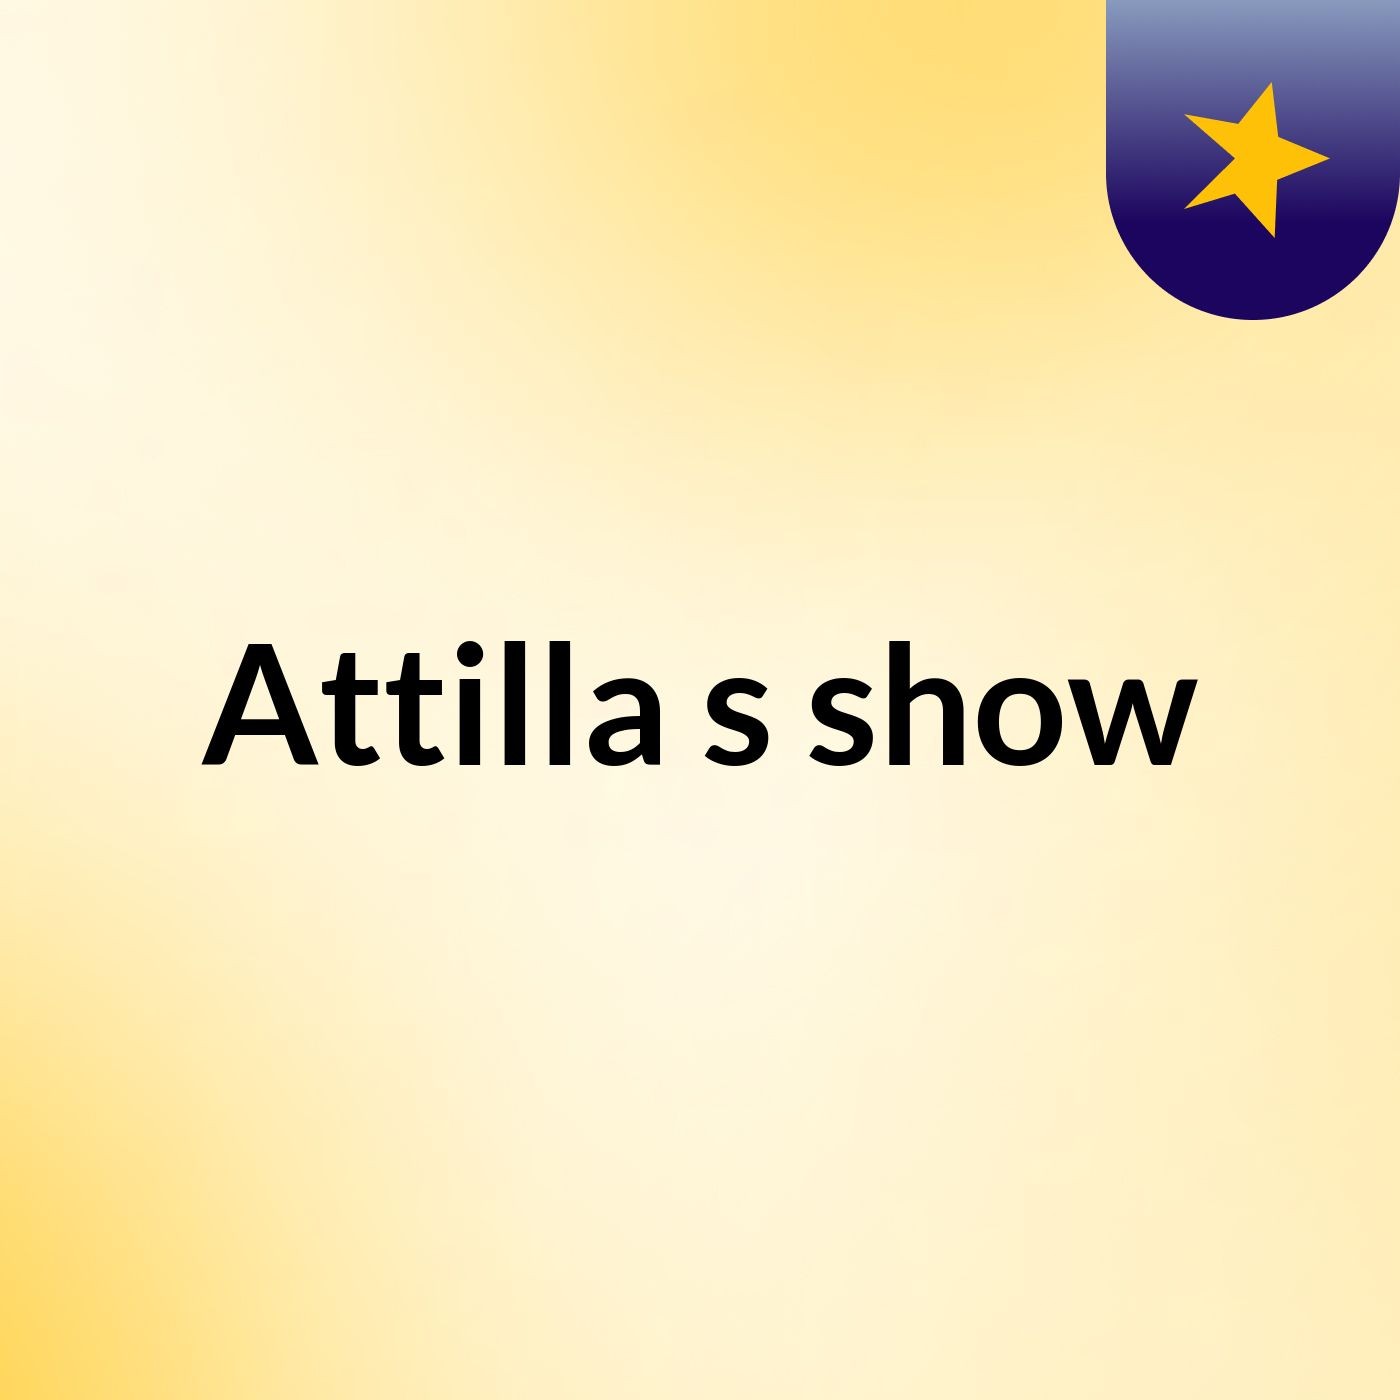 Attilla's show